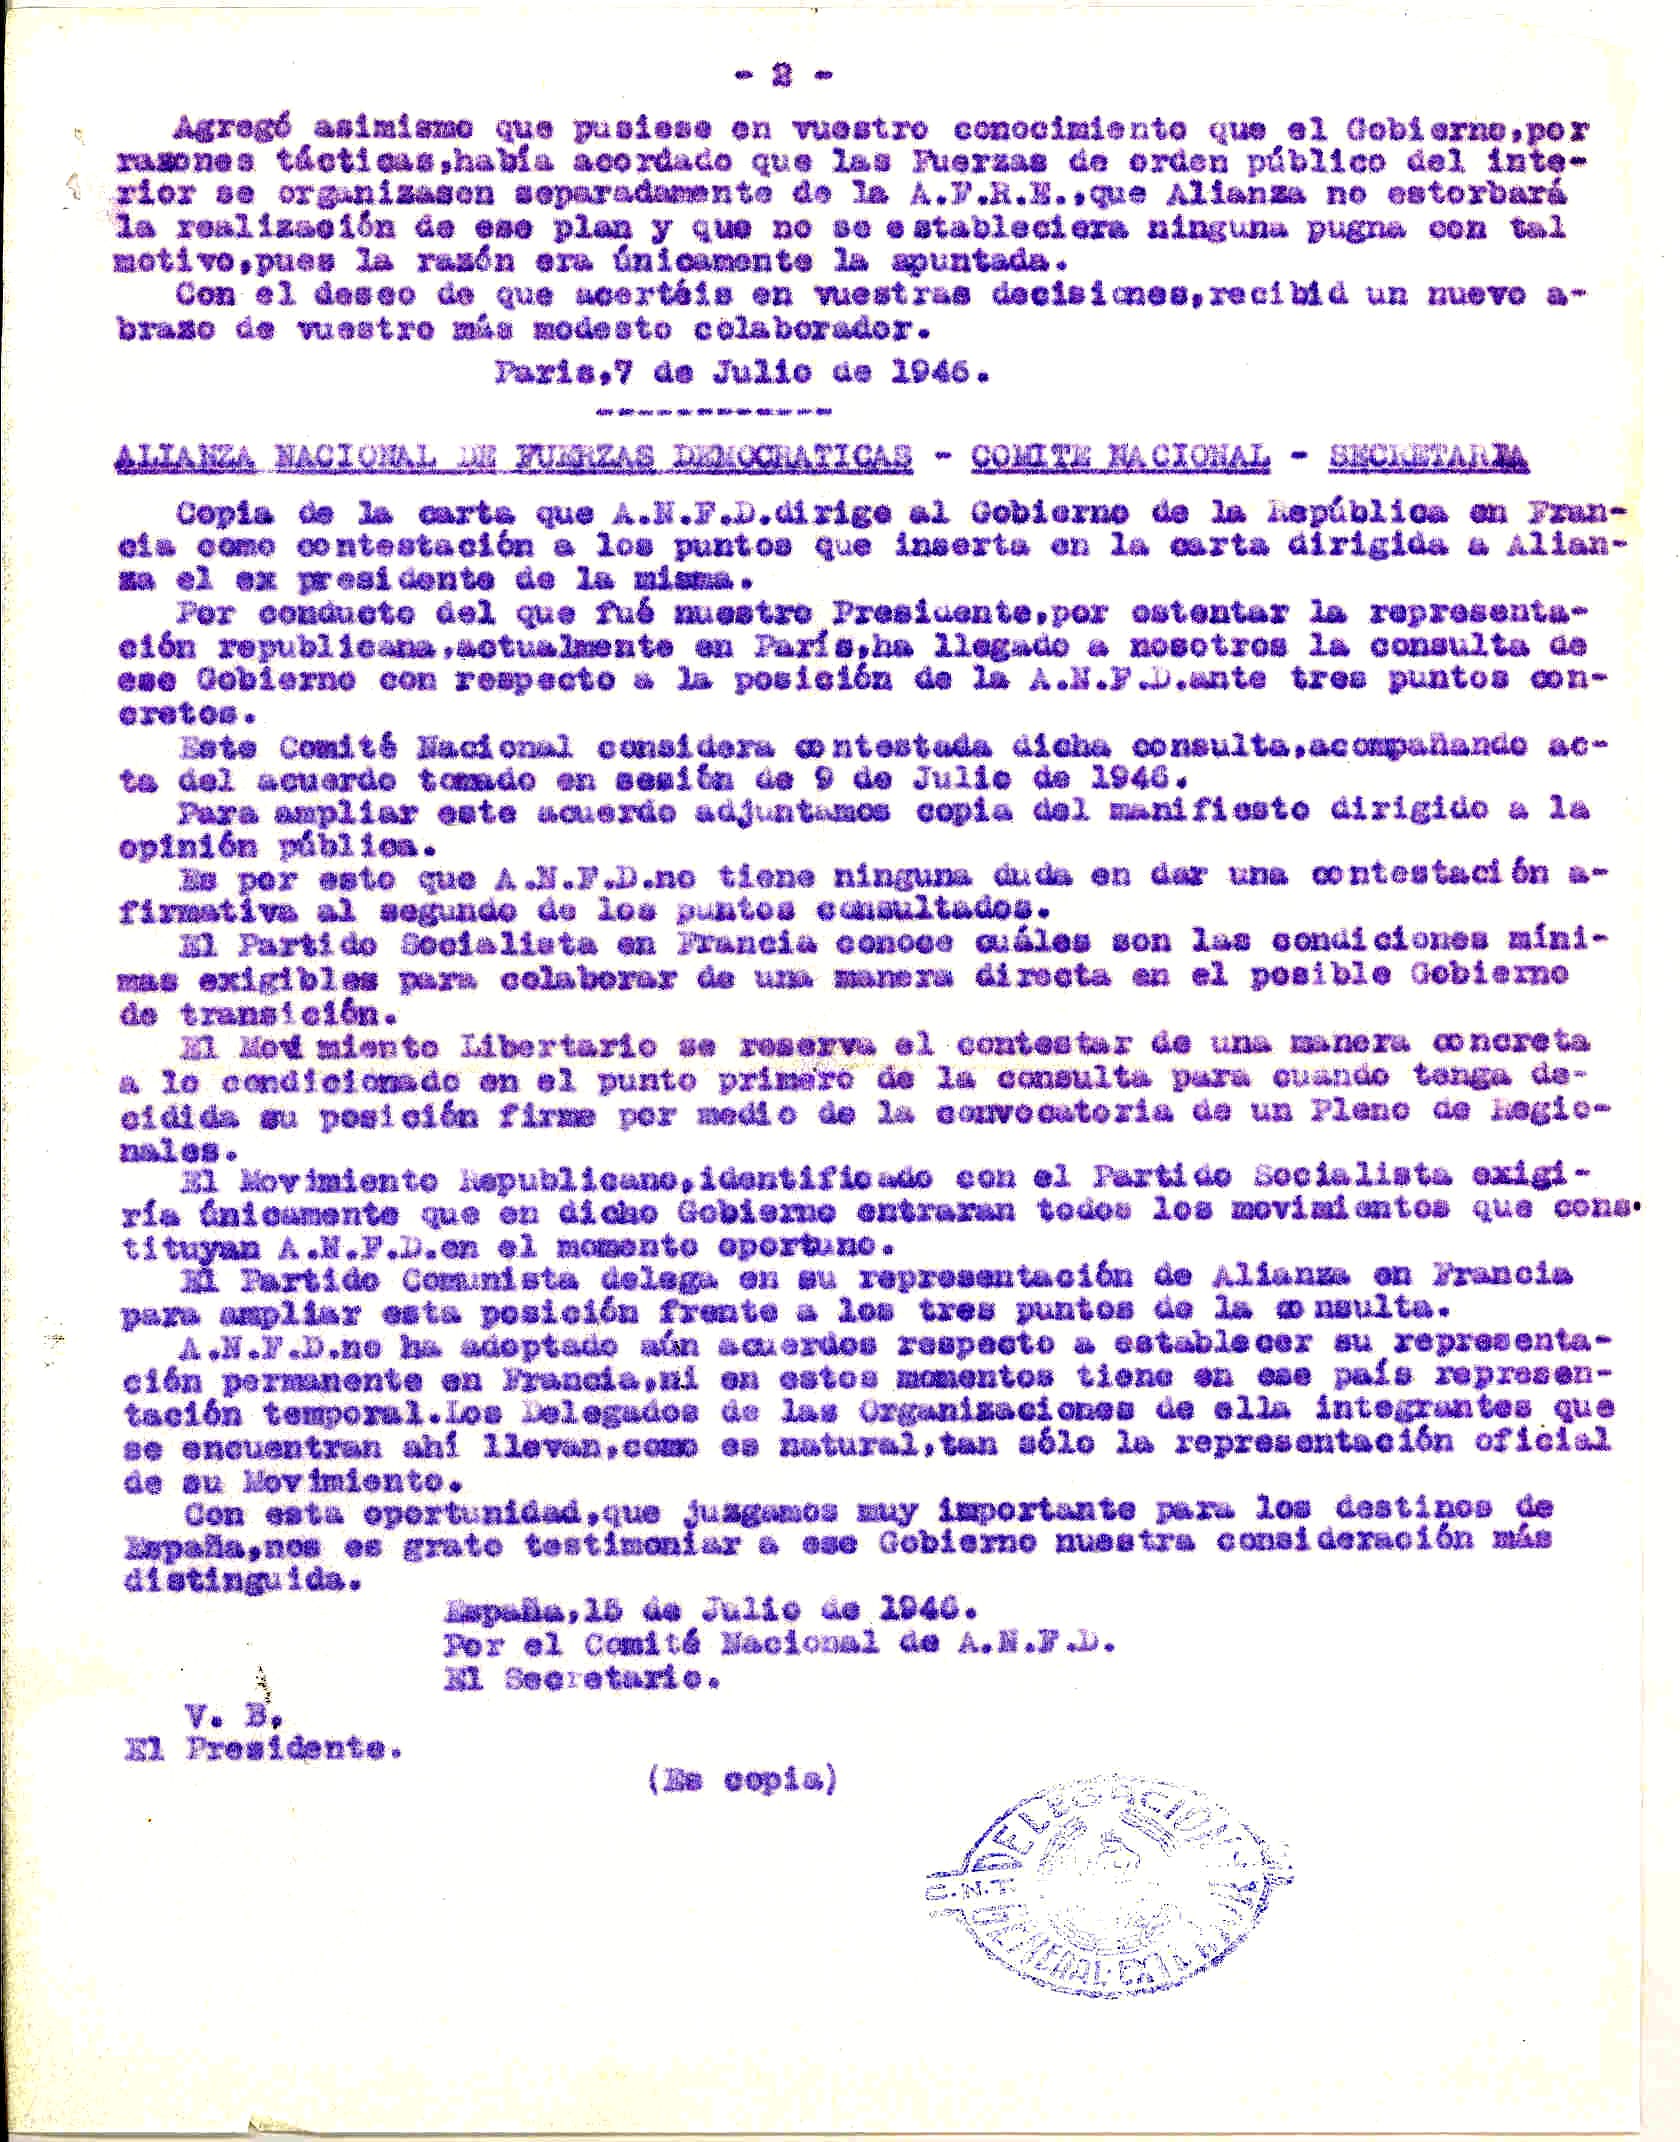 Copia de una carta de la Delegación de CNT en el exterior en la que se incluye otra que el Comité Nacional de la ANFD de España dirigió al Gobierno de la República sobre la posible colaboración entre ambos